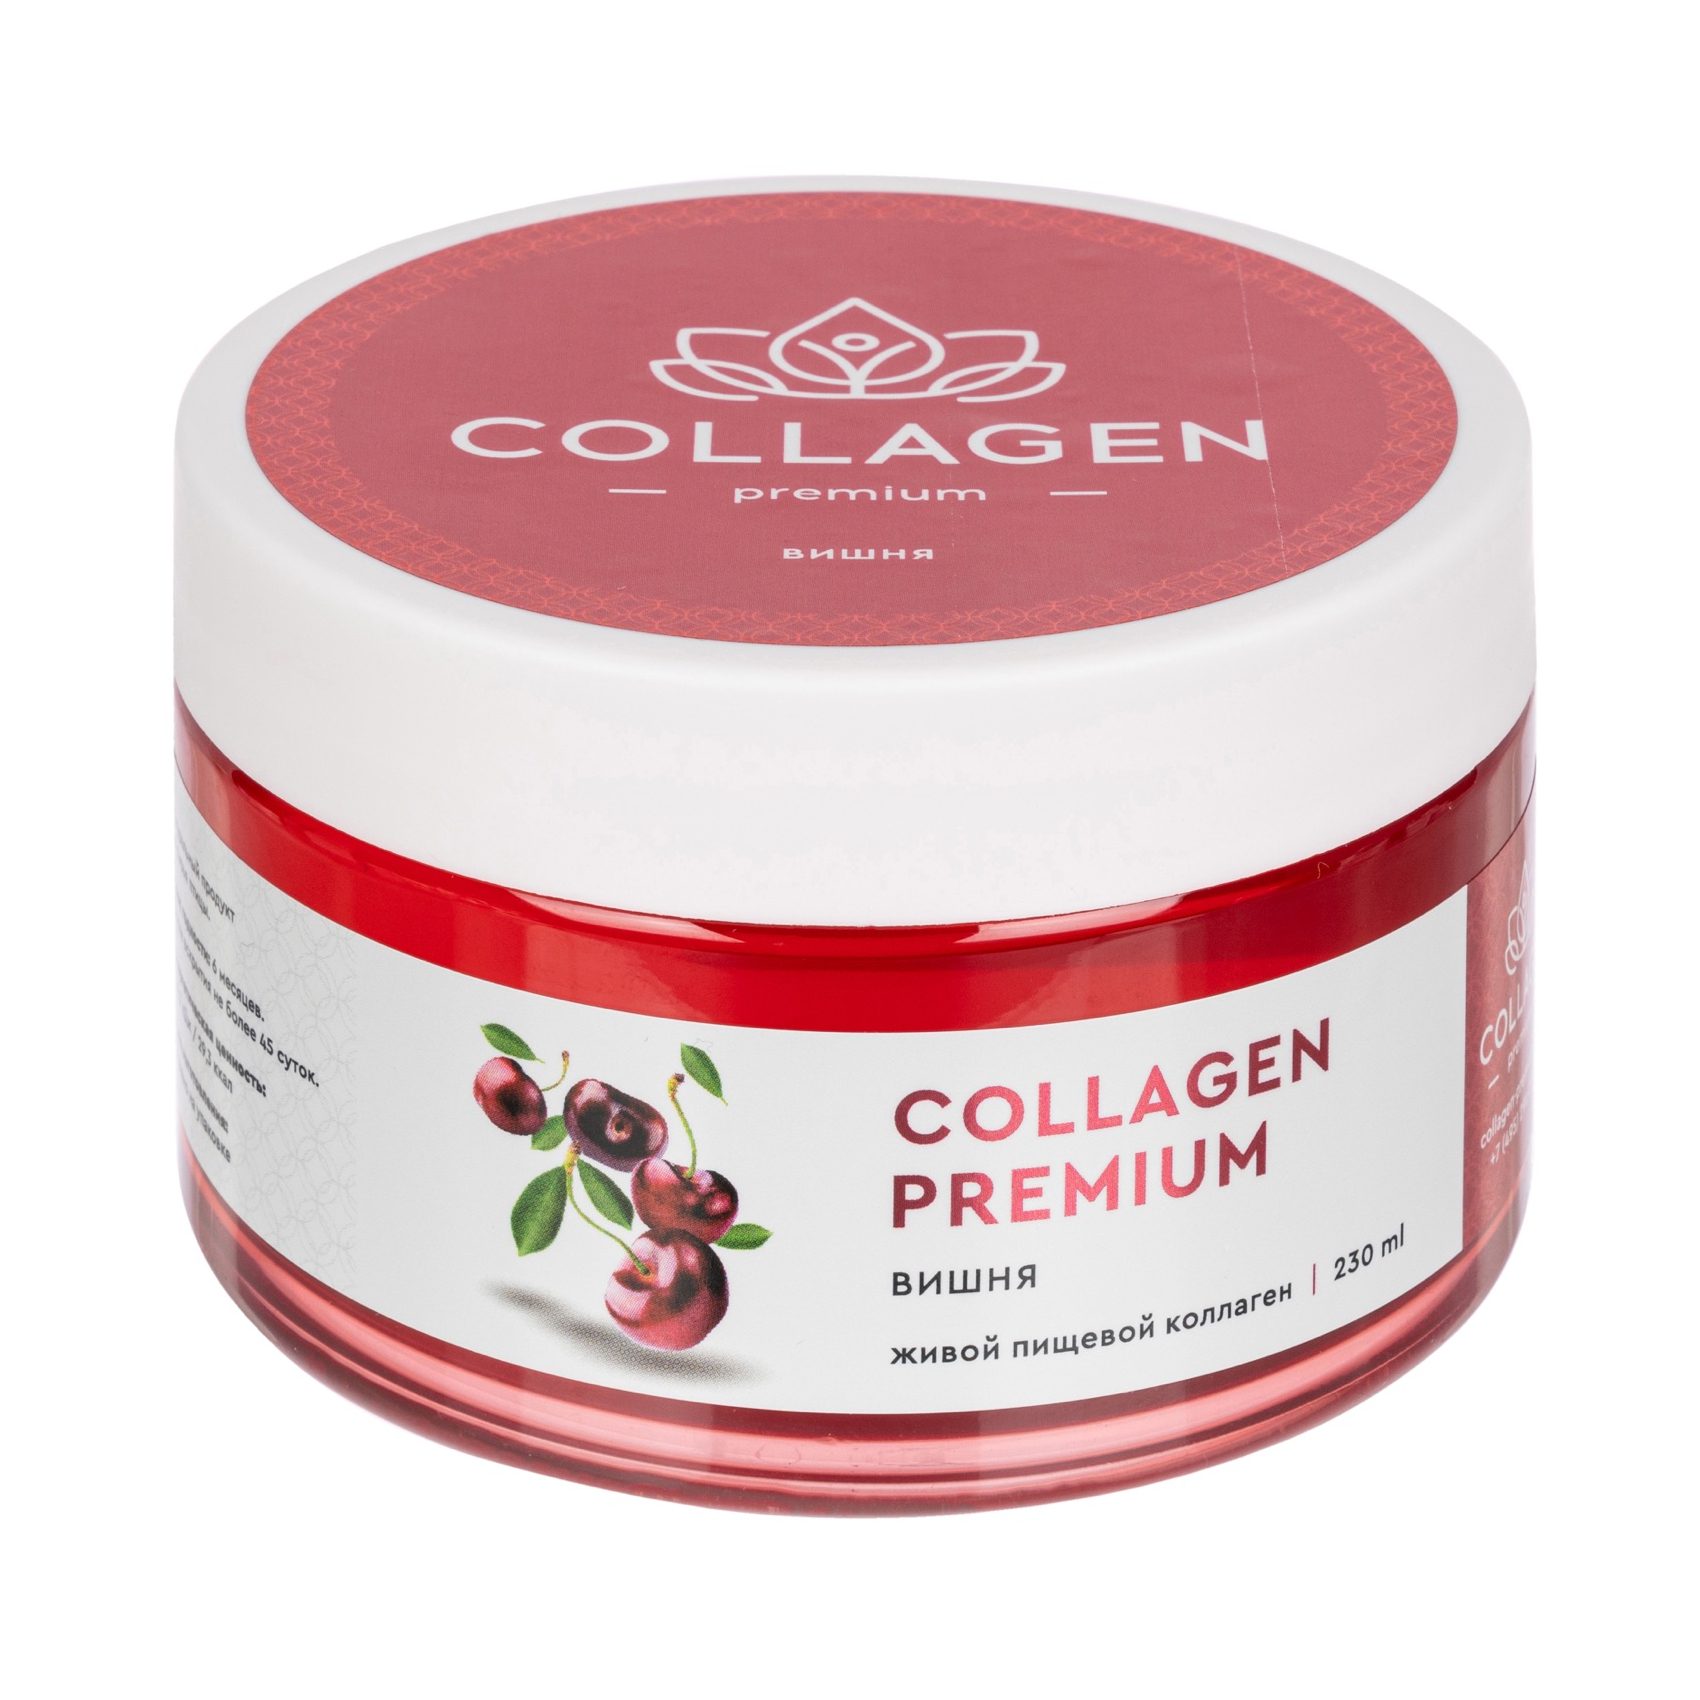 Коллаген Collagen Premium жевательный пищевой желе вишня 230г